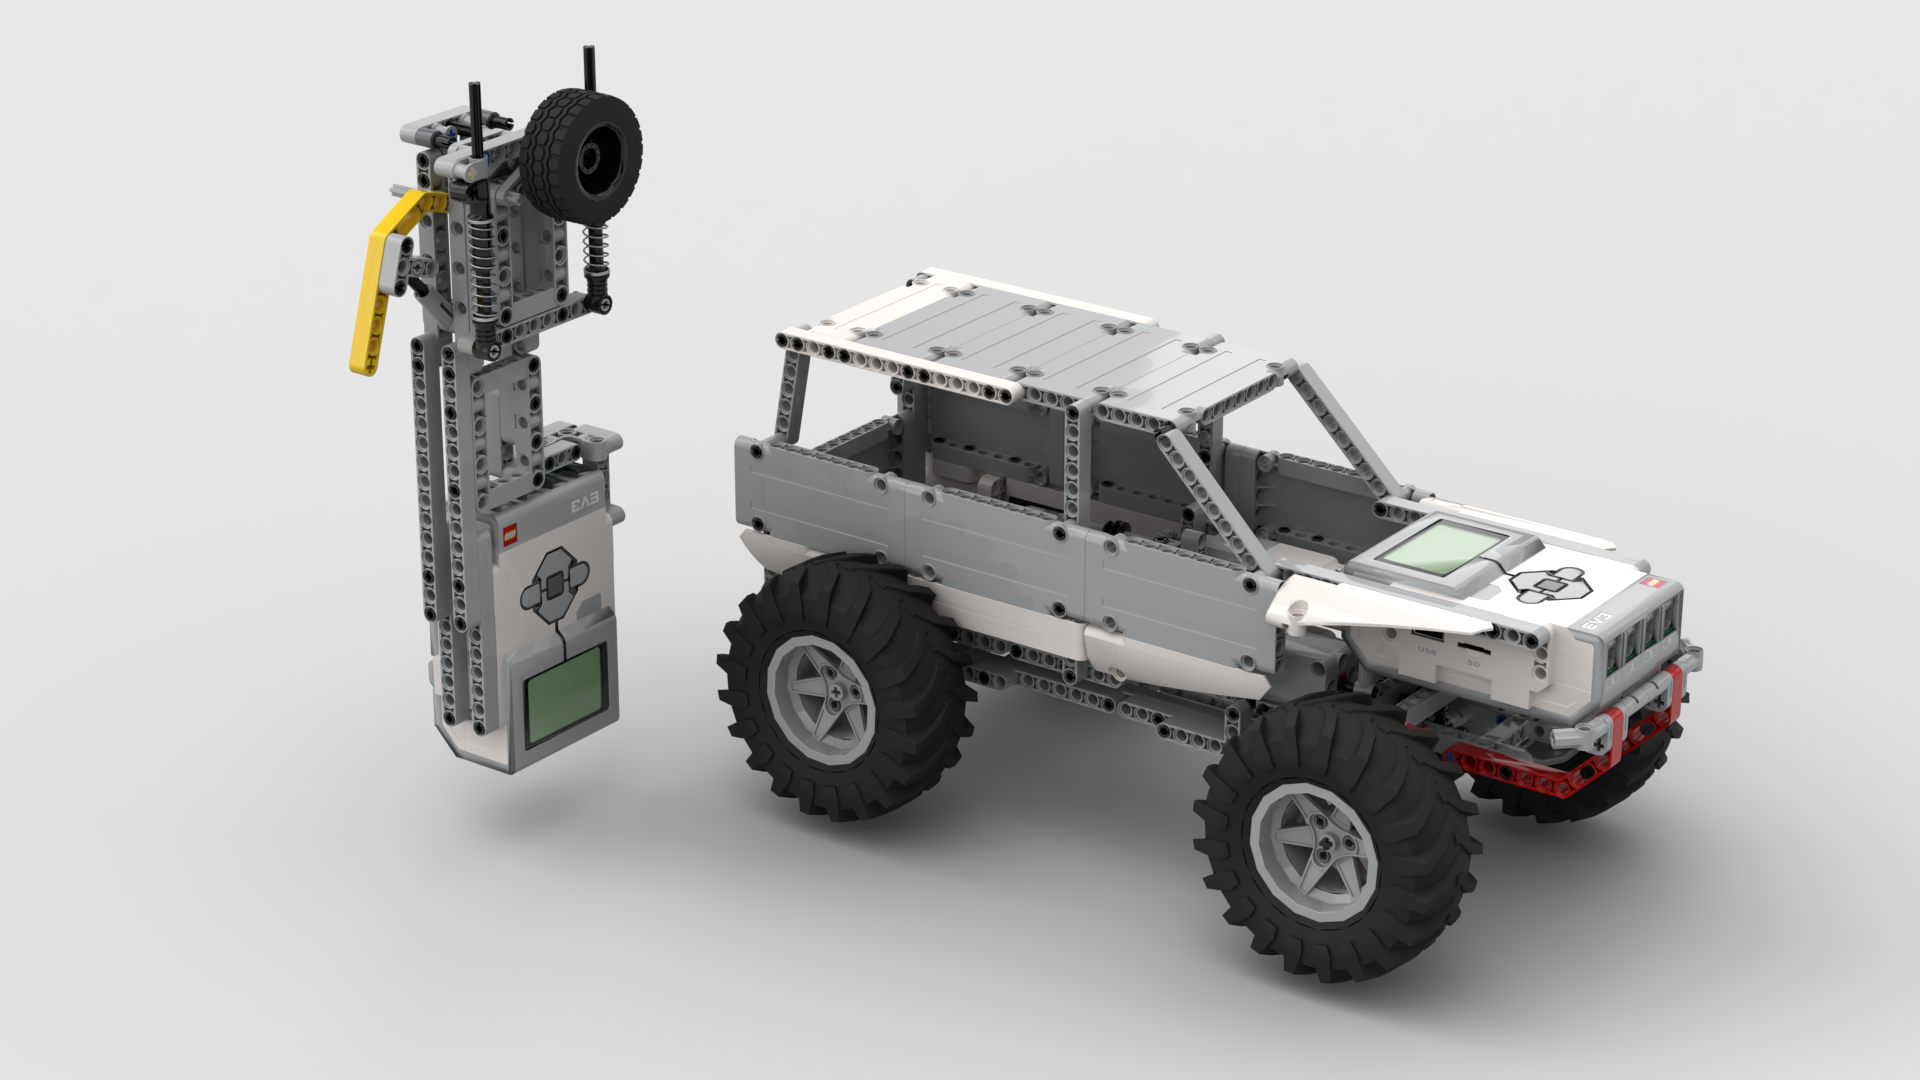 LEGO Digital Crawler with EV3 Controlled Gear Box